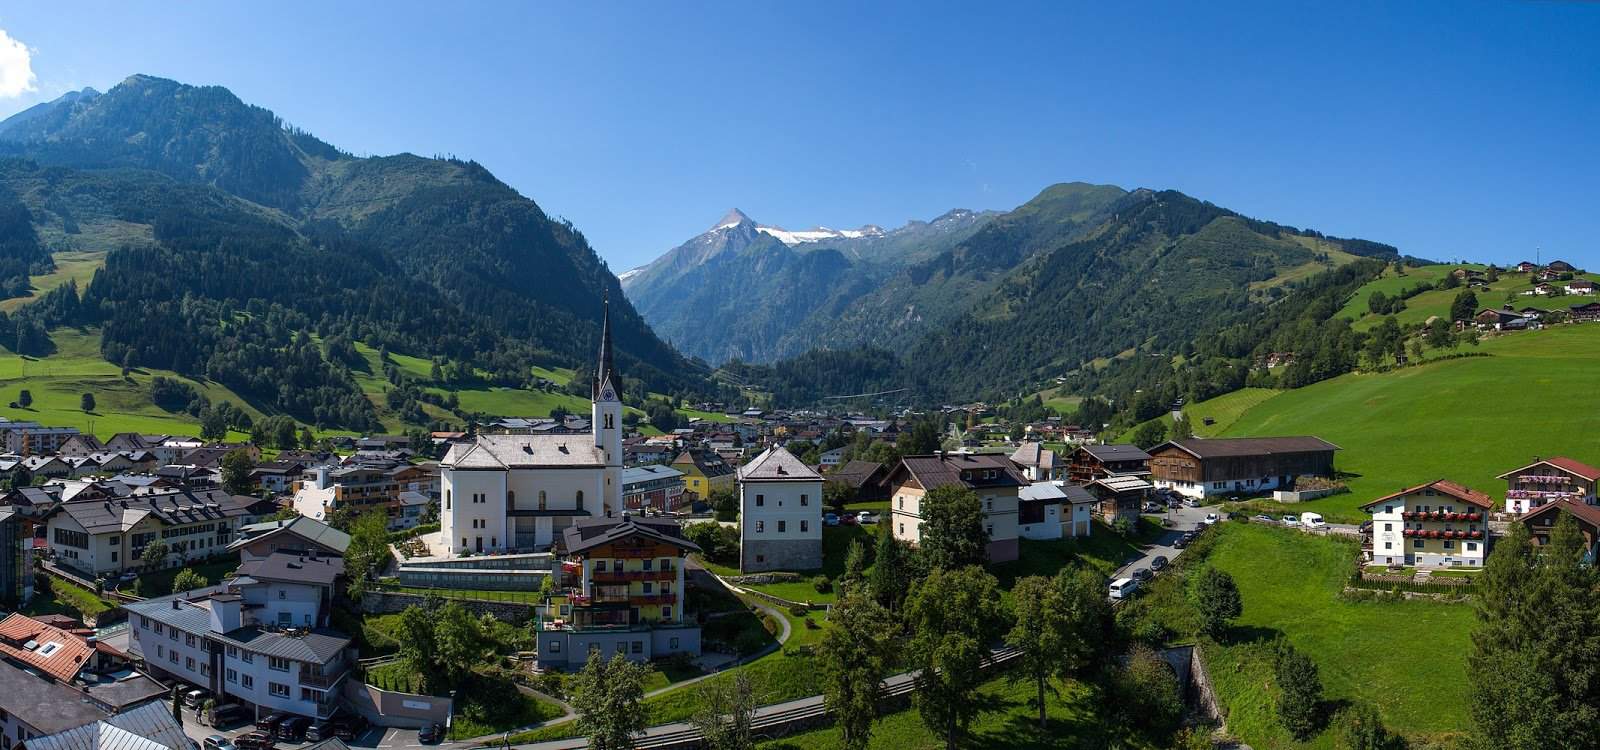 افضل 5 من فنادق كابرون النمسا نوصي بها 2020